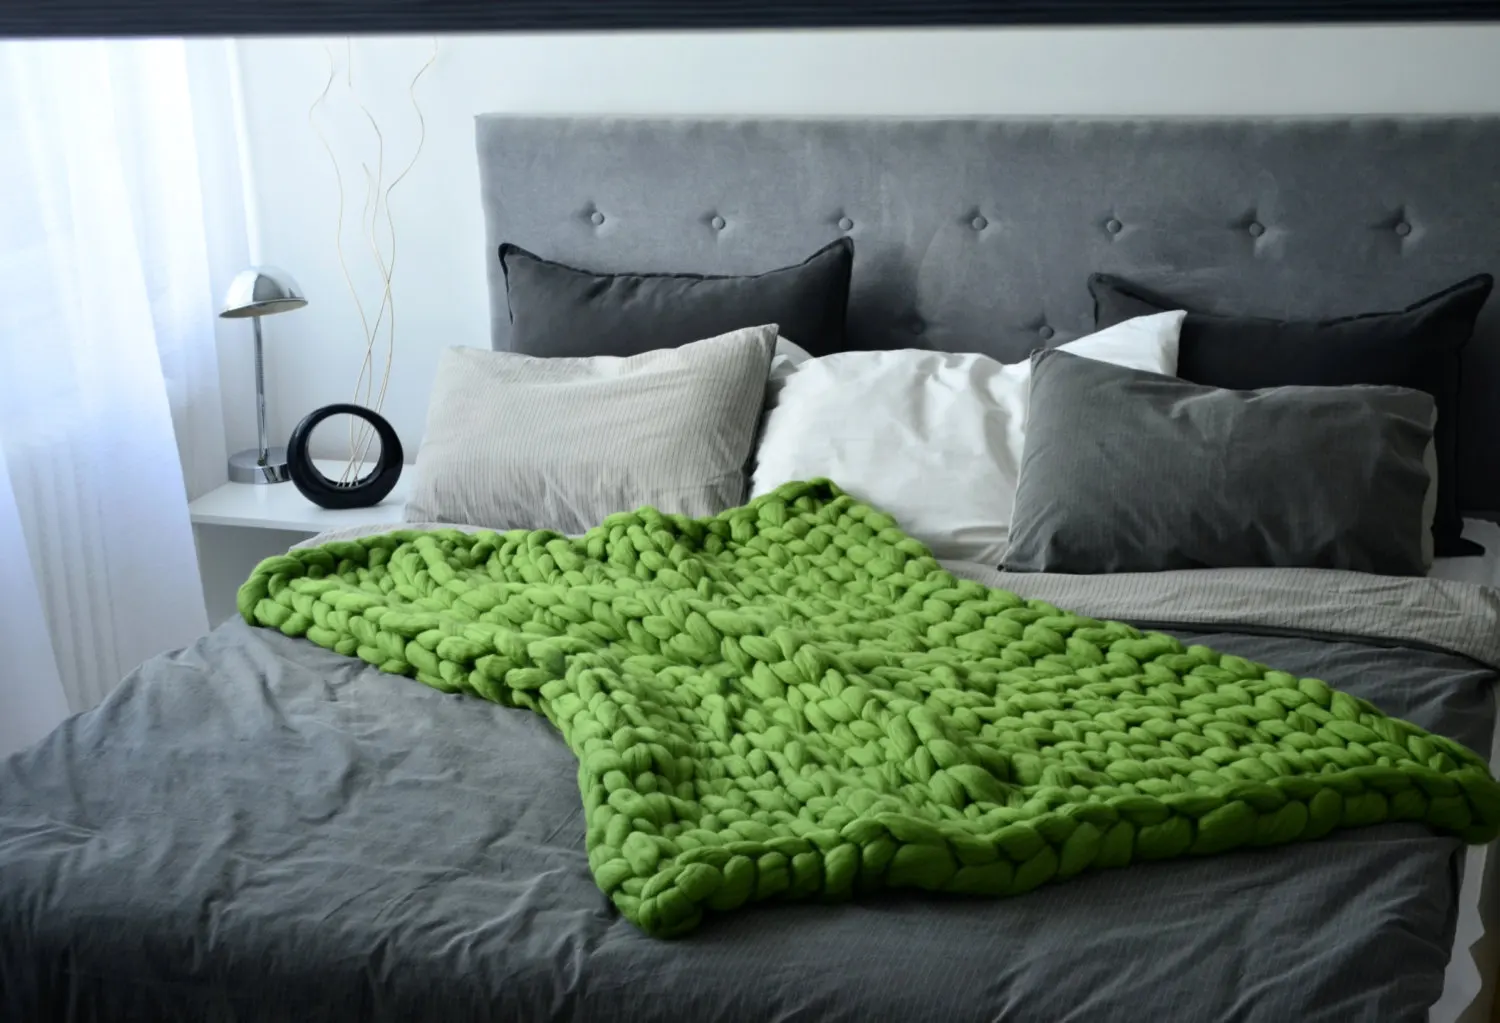 Большое мягкое одеяло крупной ручной вязки Пледы для зимней кровати дивана плоского толстой пряжи вязания пледы дешевые чехлы для дивана одеяло s